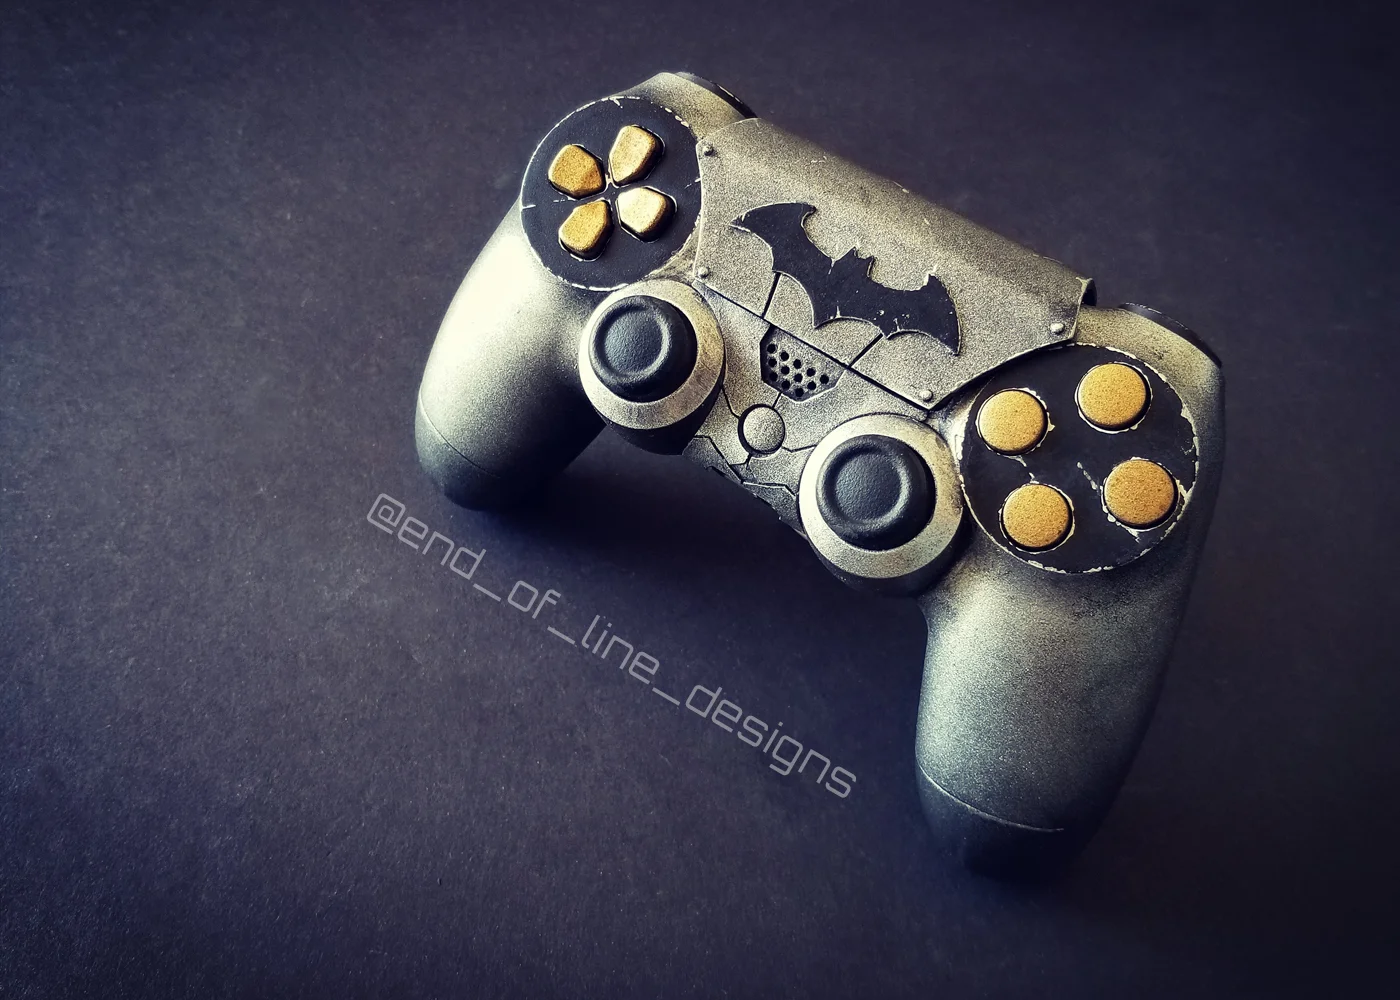 Взгляните на потрясающий контроллер для PS4 в стиле Бэтмена, сделанный вручную - фото 4